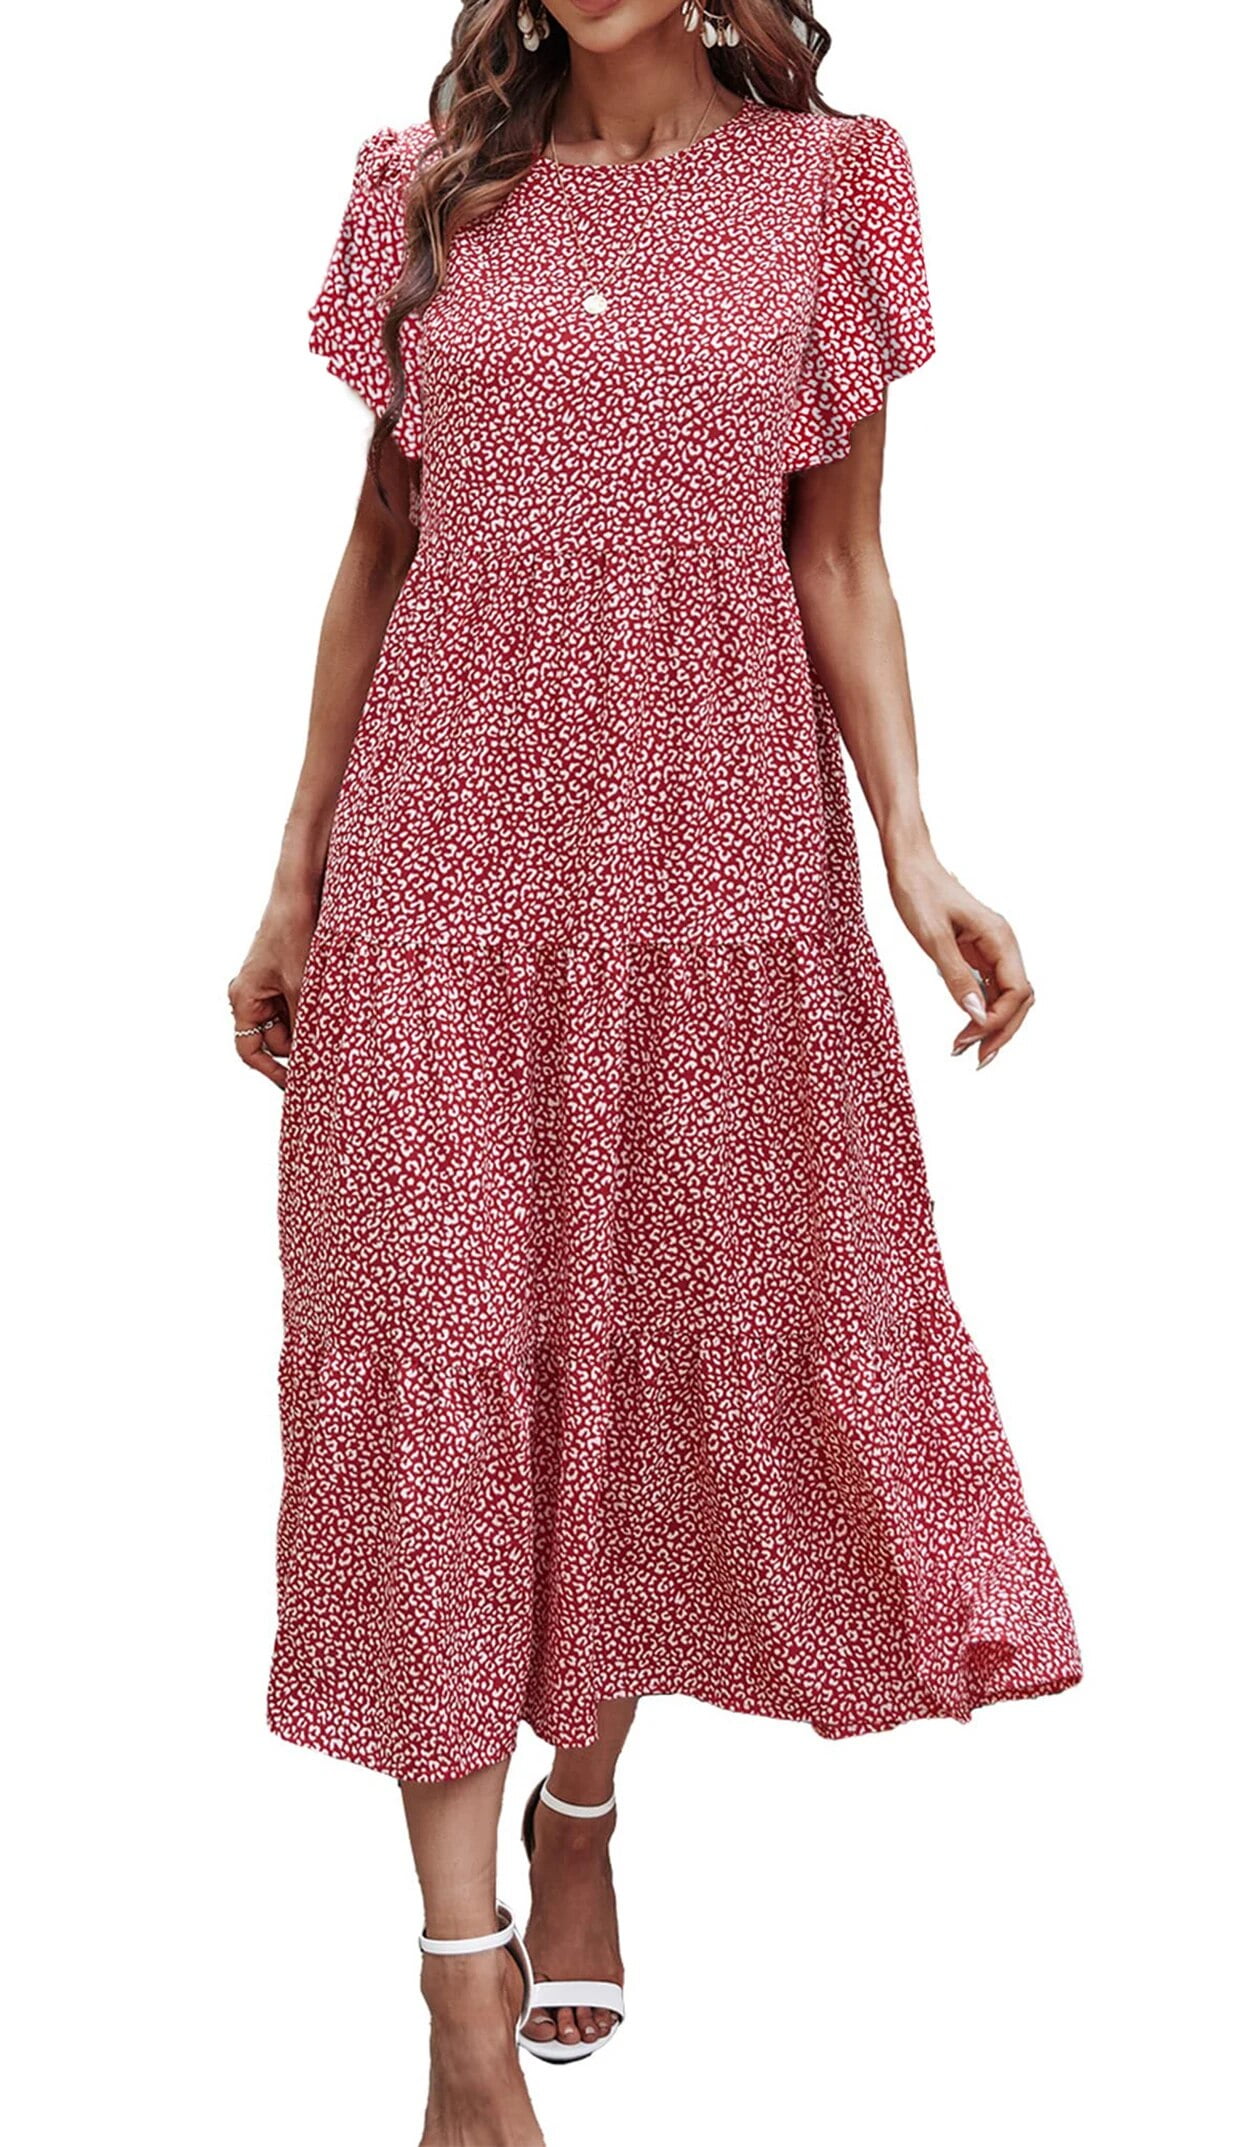 Fantaslook Dresses for Women Summer Casual Boho Dress Floral Print ...